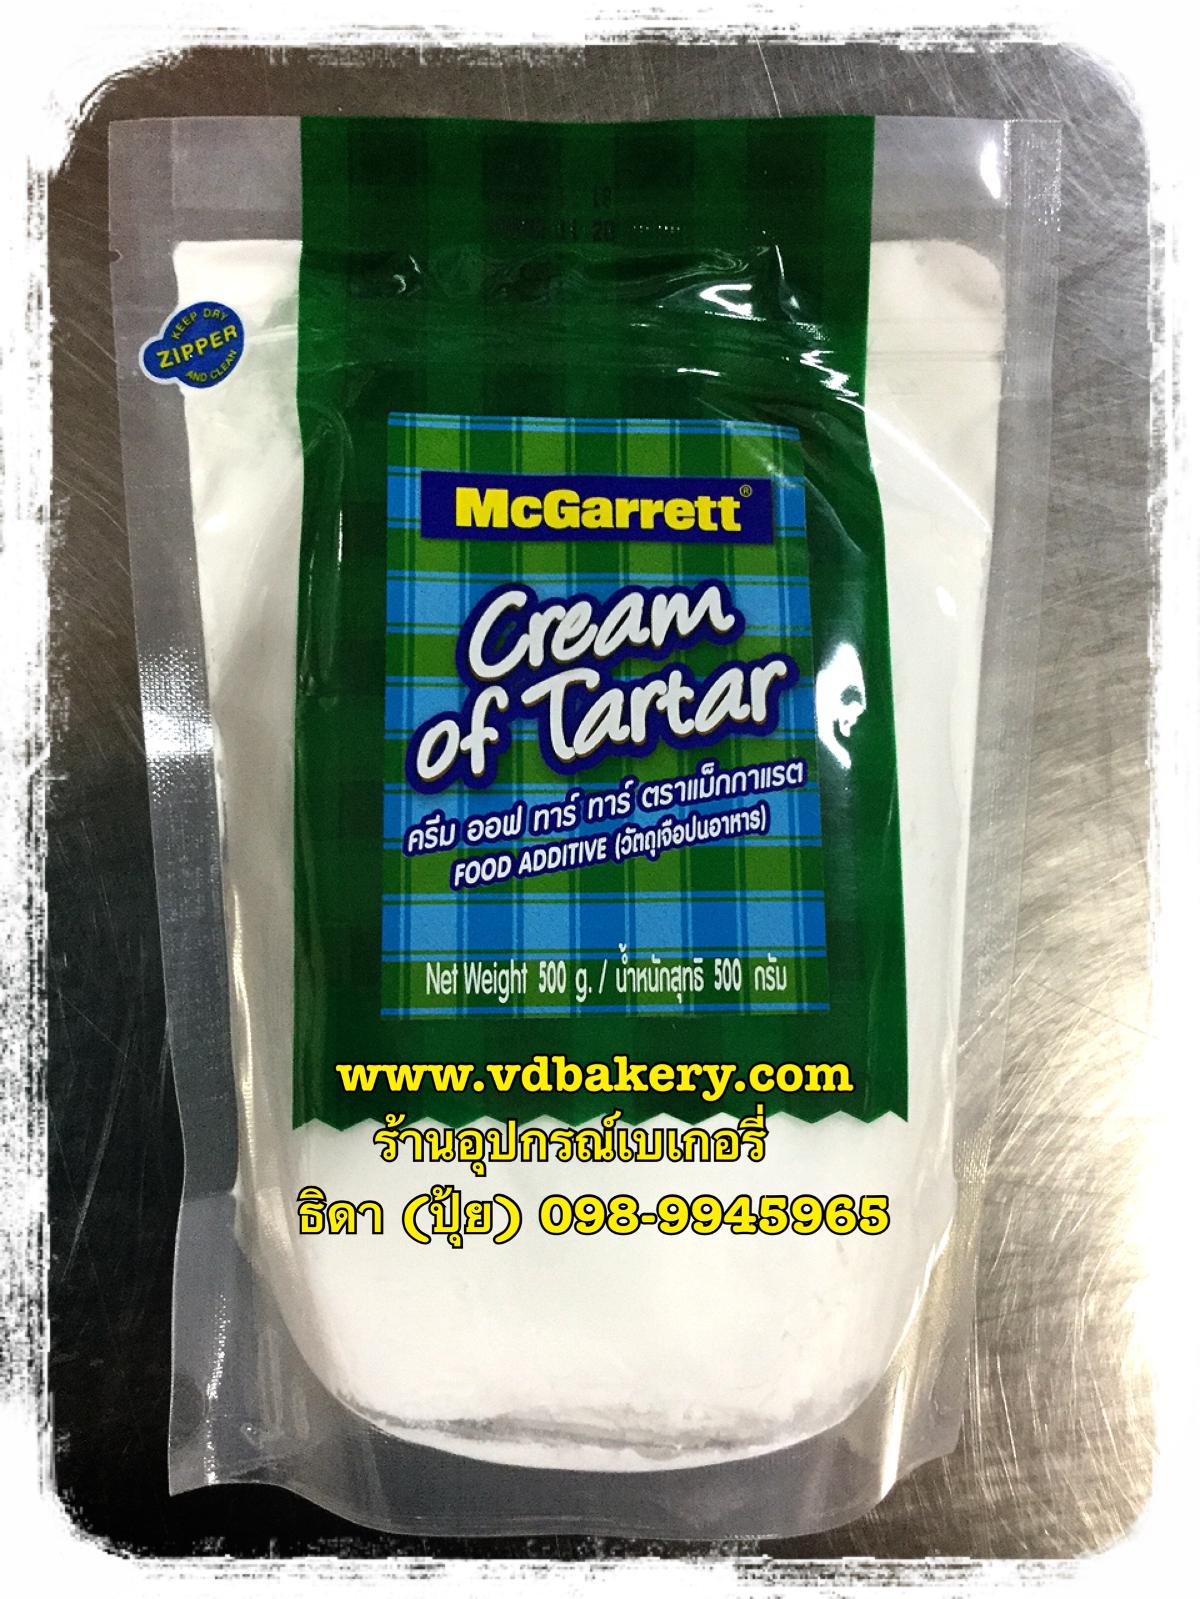 ครีม ออฟ ทาร์ทาร์ ตราMCGarrett (Cream of Tartar) (500g./ถุง)